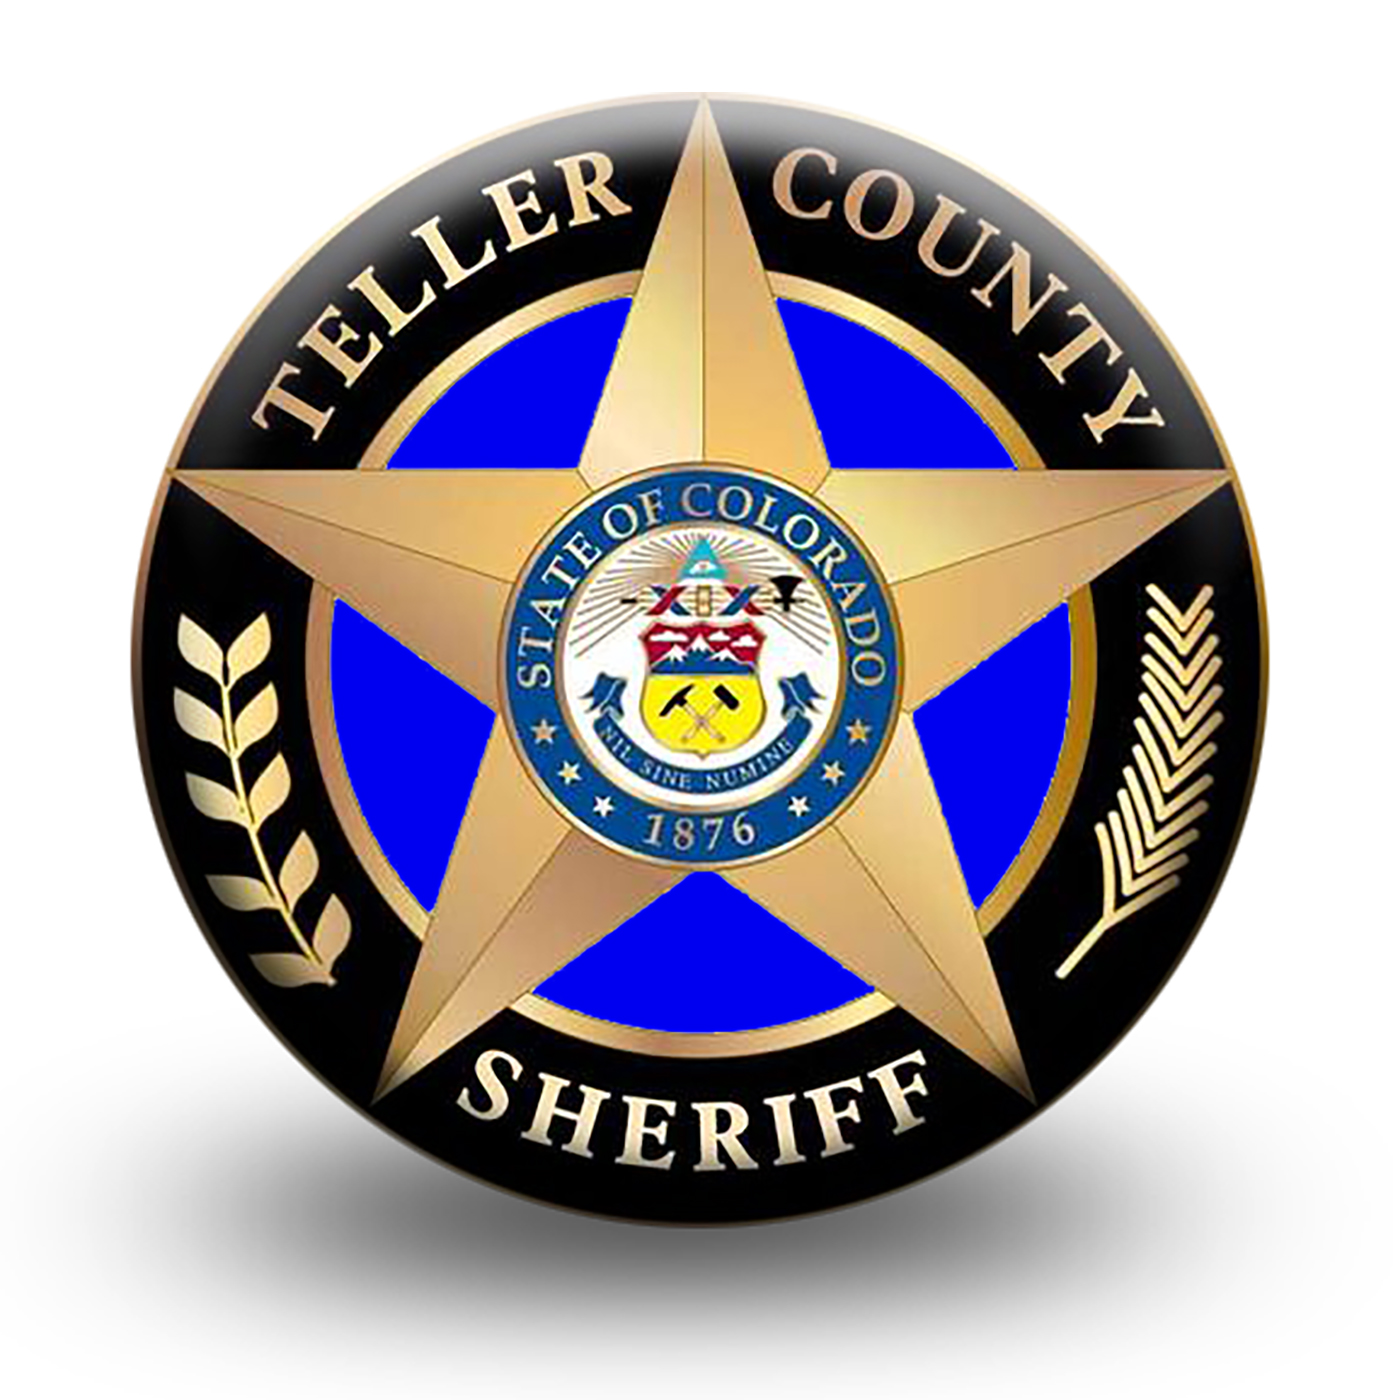 Teller County Sheriff Podcast